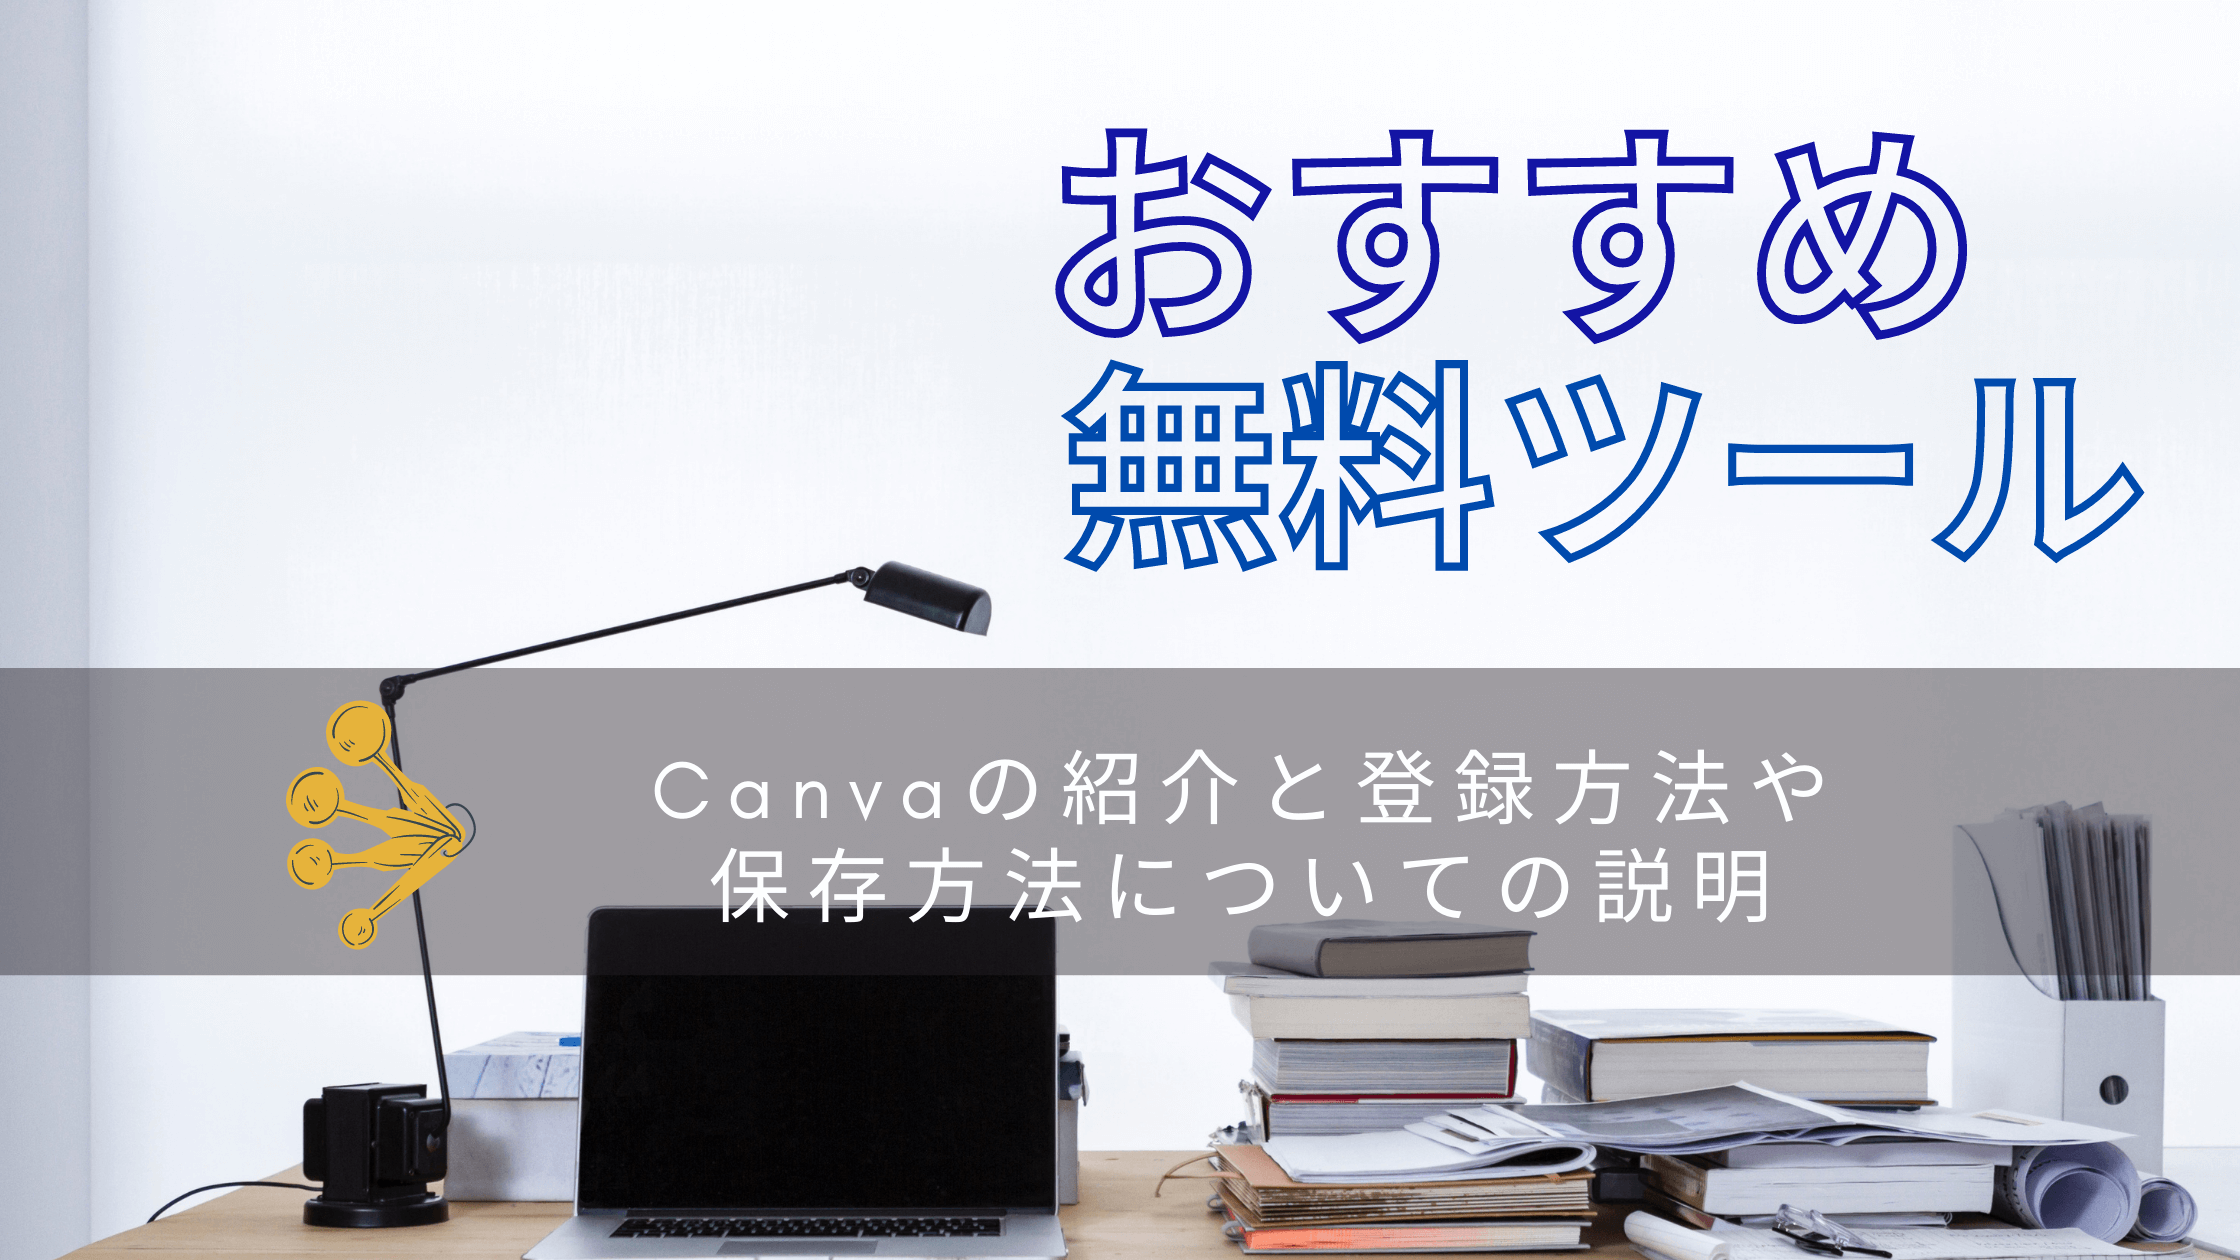 Canvaの紹介と登録方法や保存方法についての説明